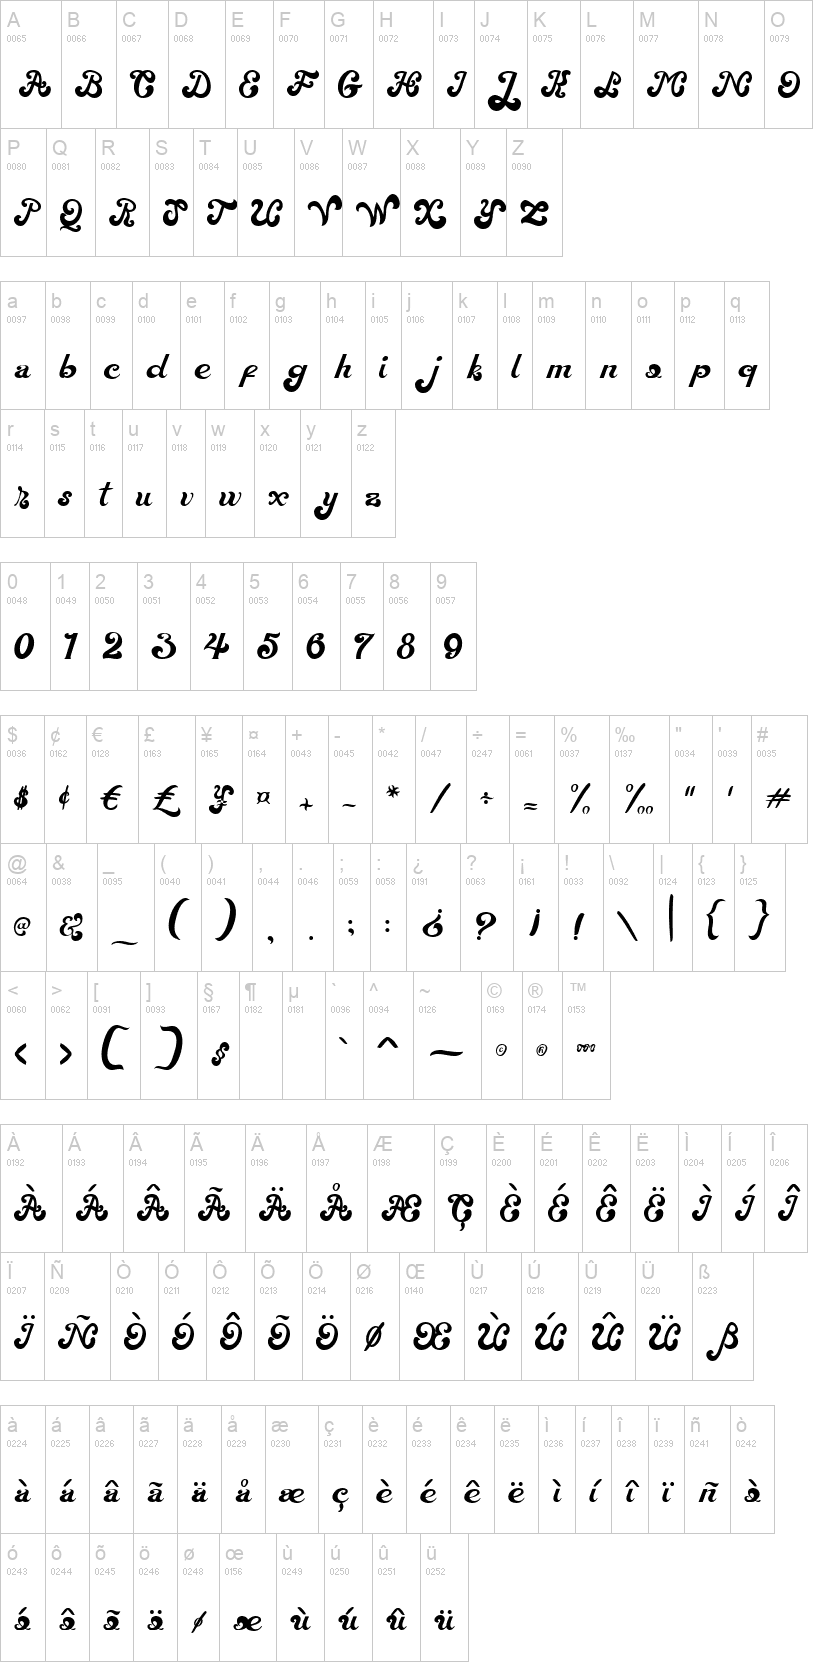 Download Free Magic Wand Font Dafont Com Fonts Typography